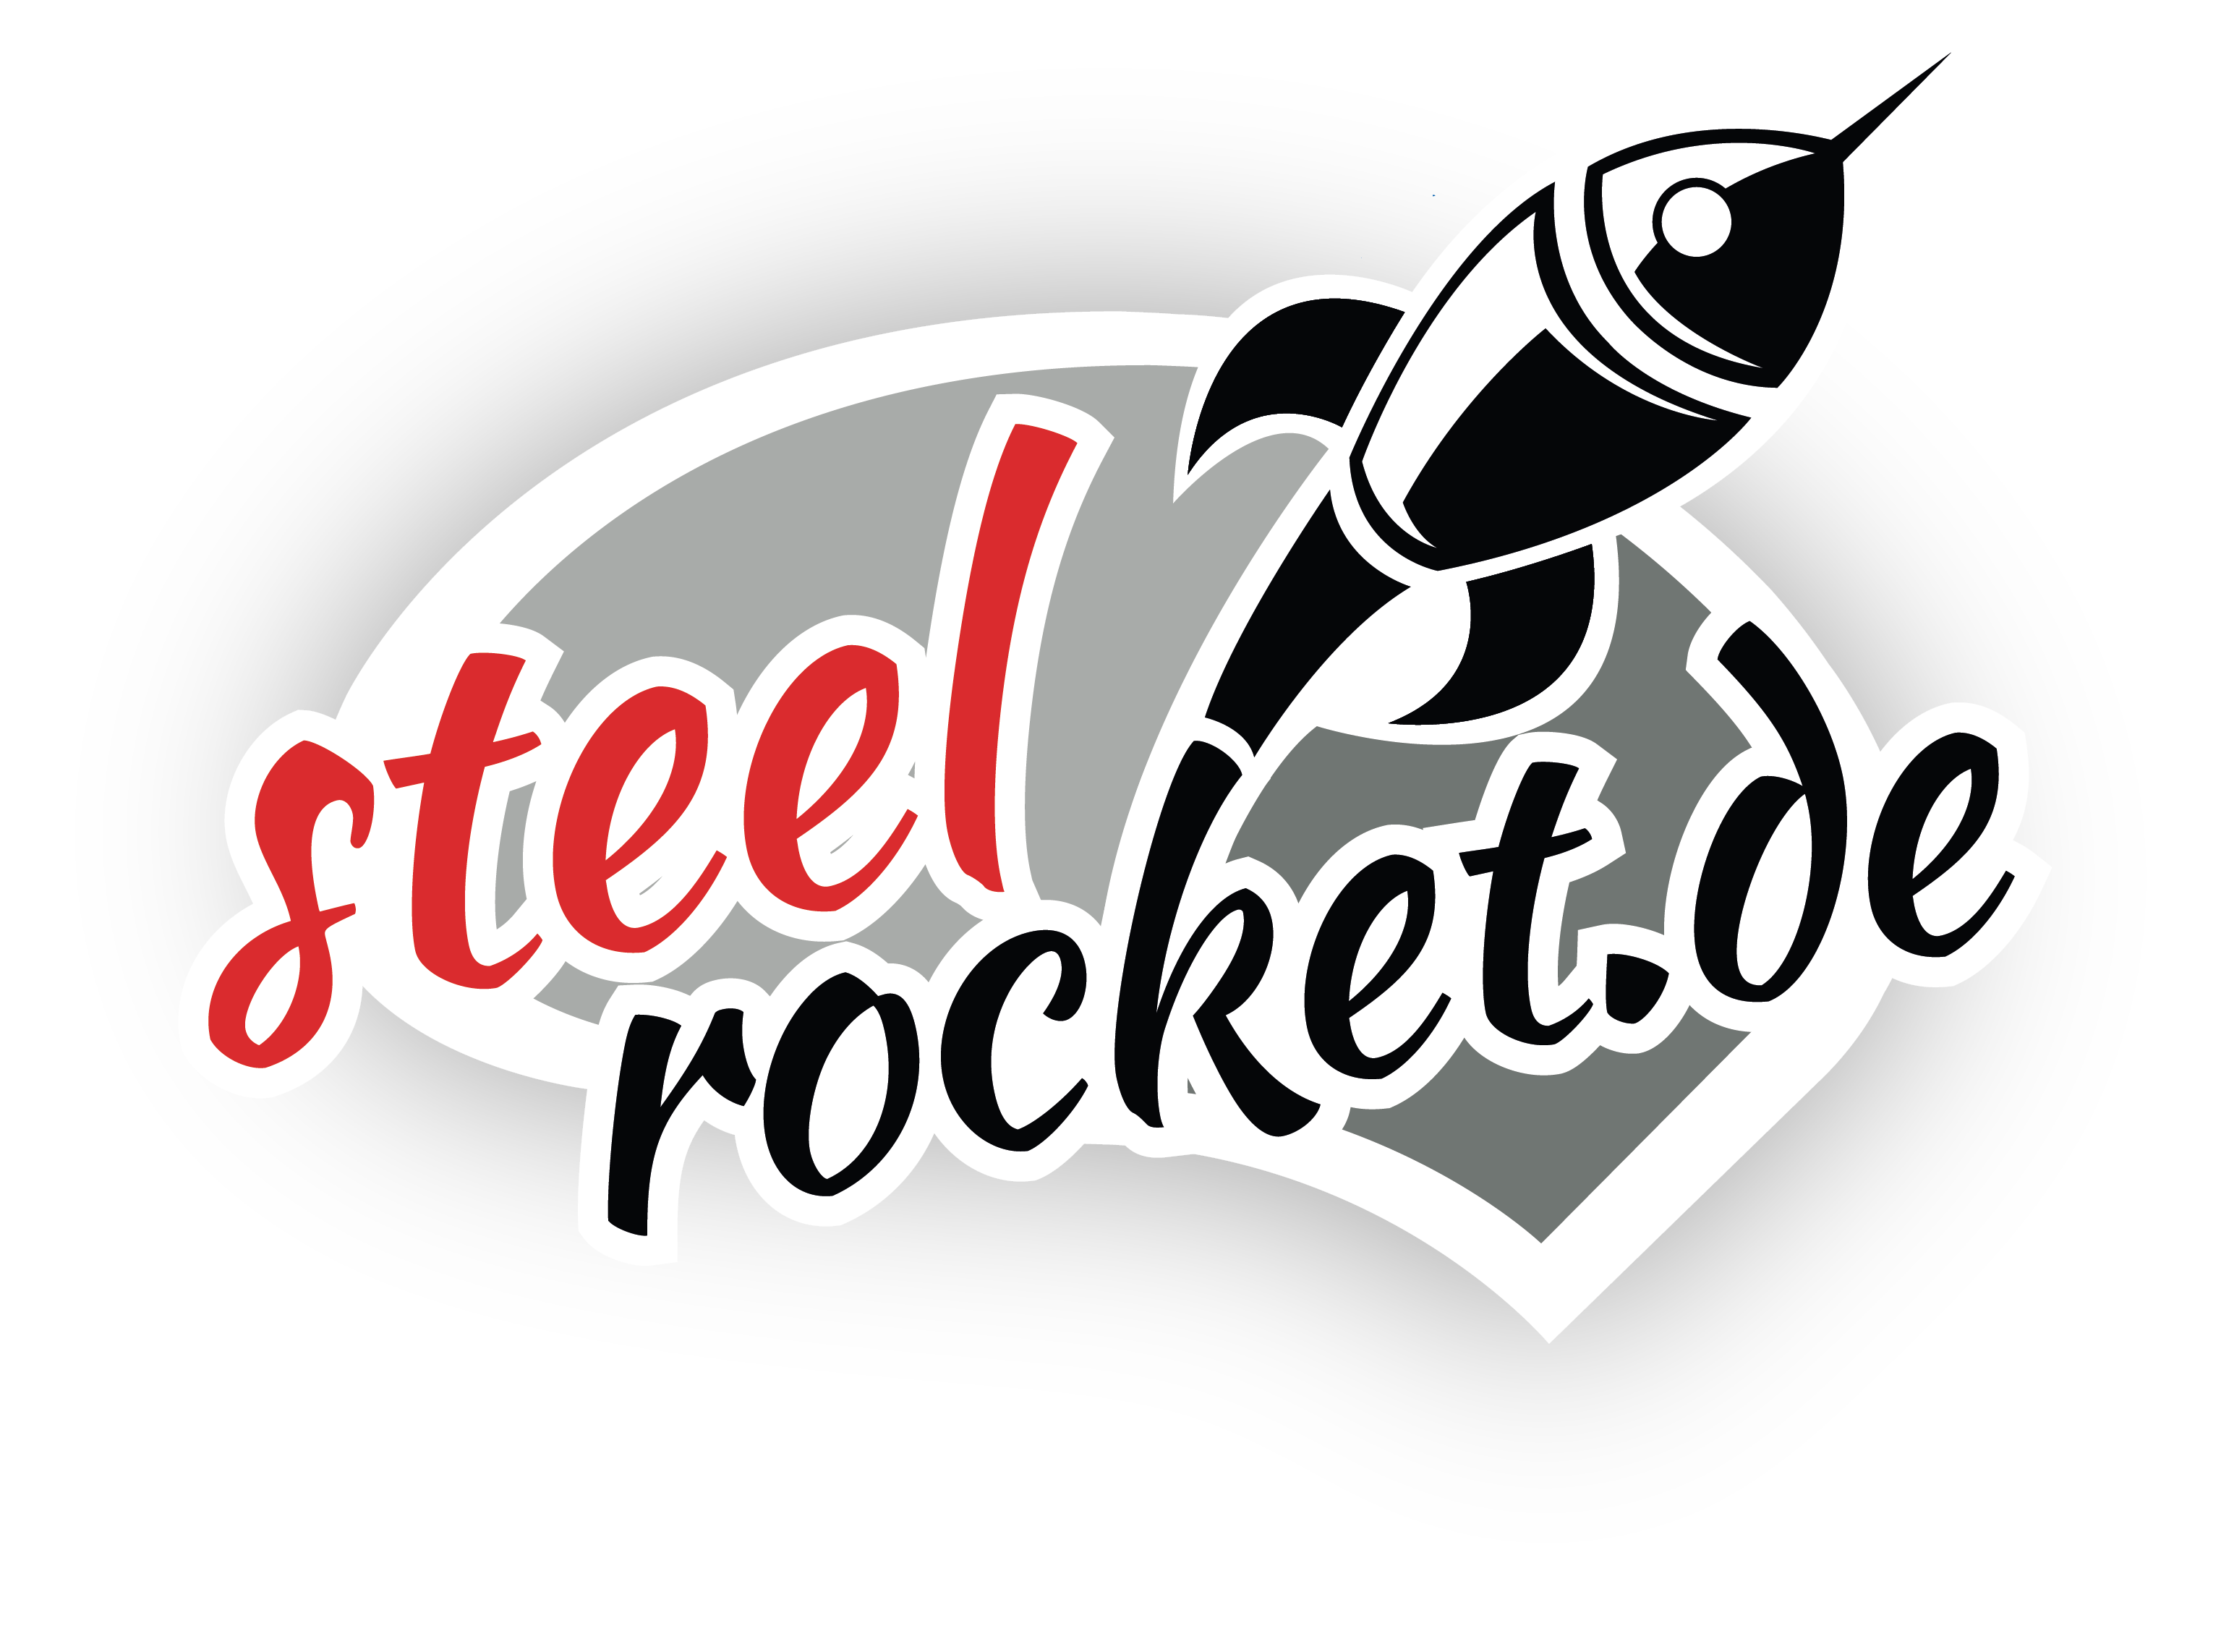 Steel Rocket